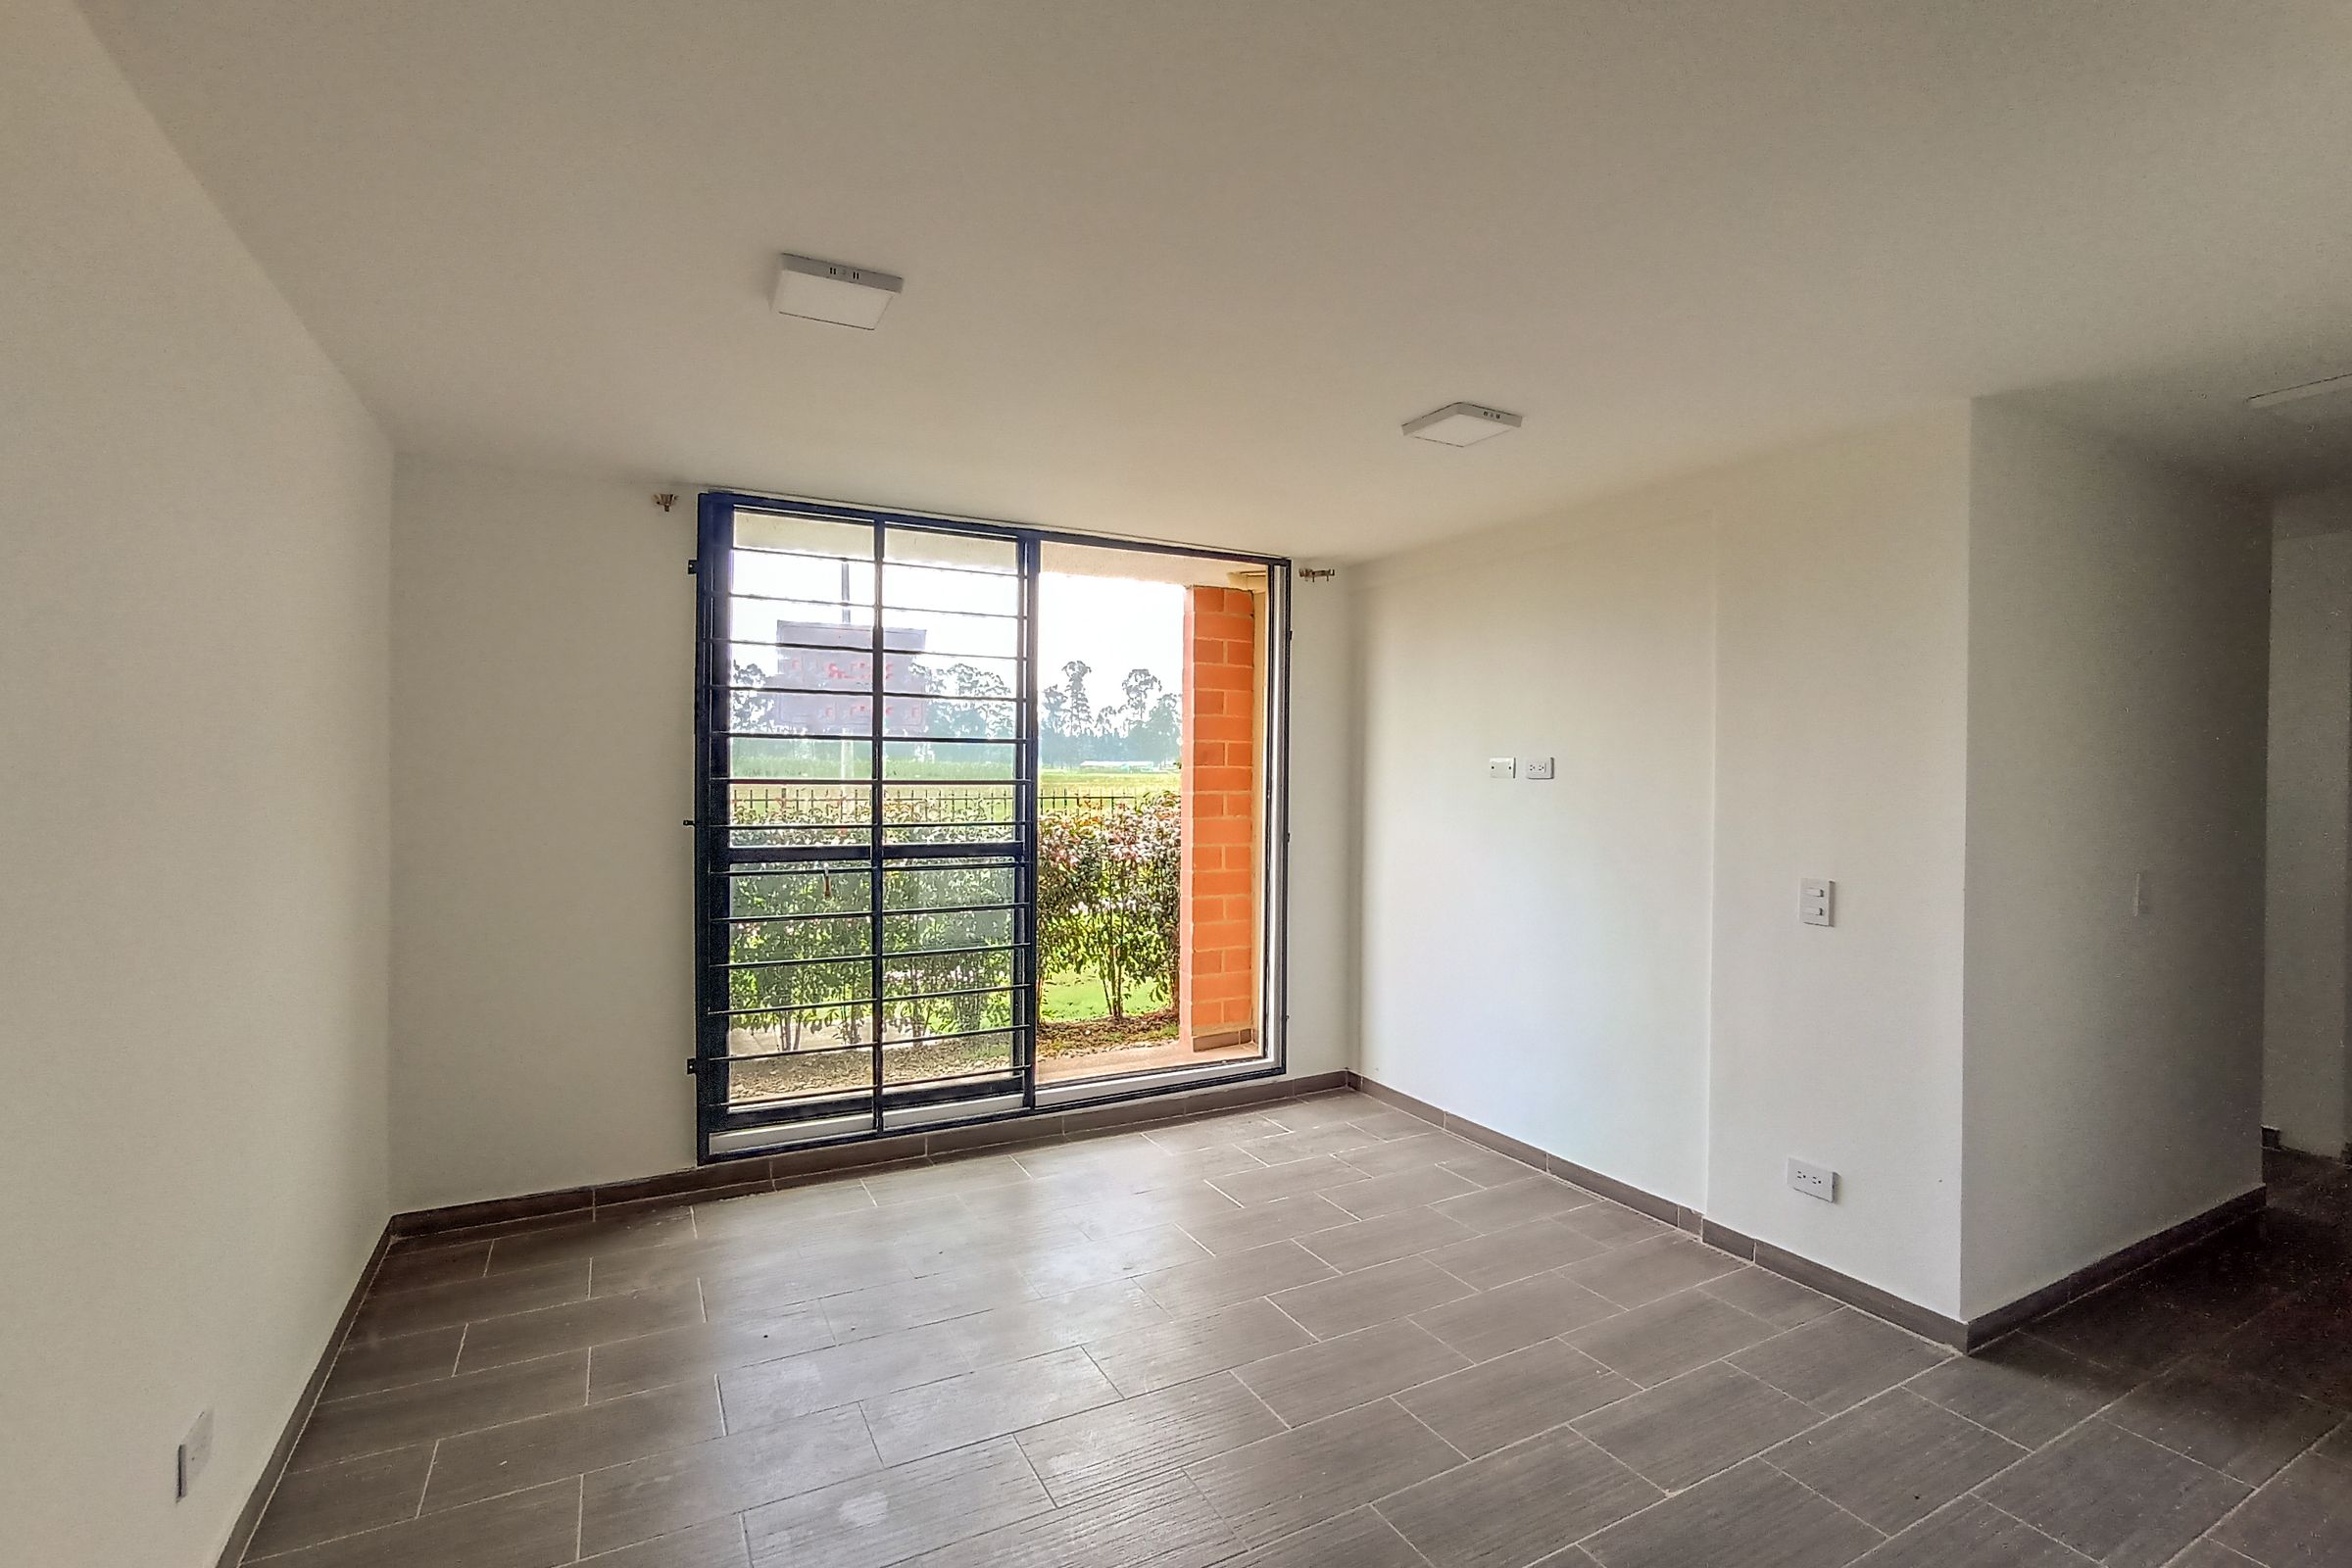 Apartamento en arriendo Madrid 64 m² - $ 850.000,00